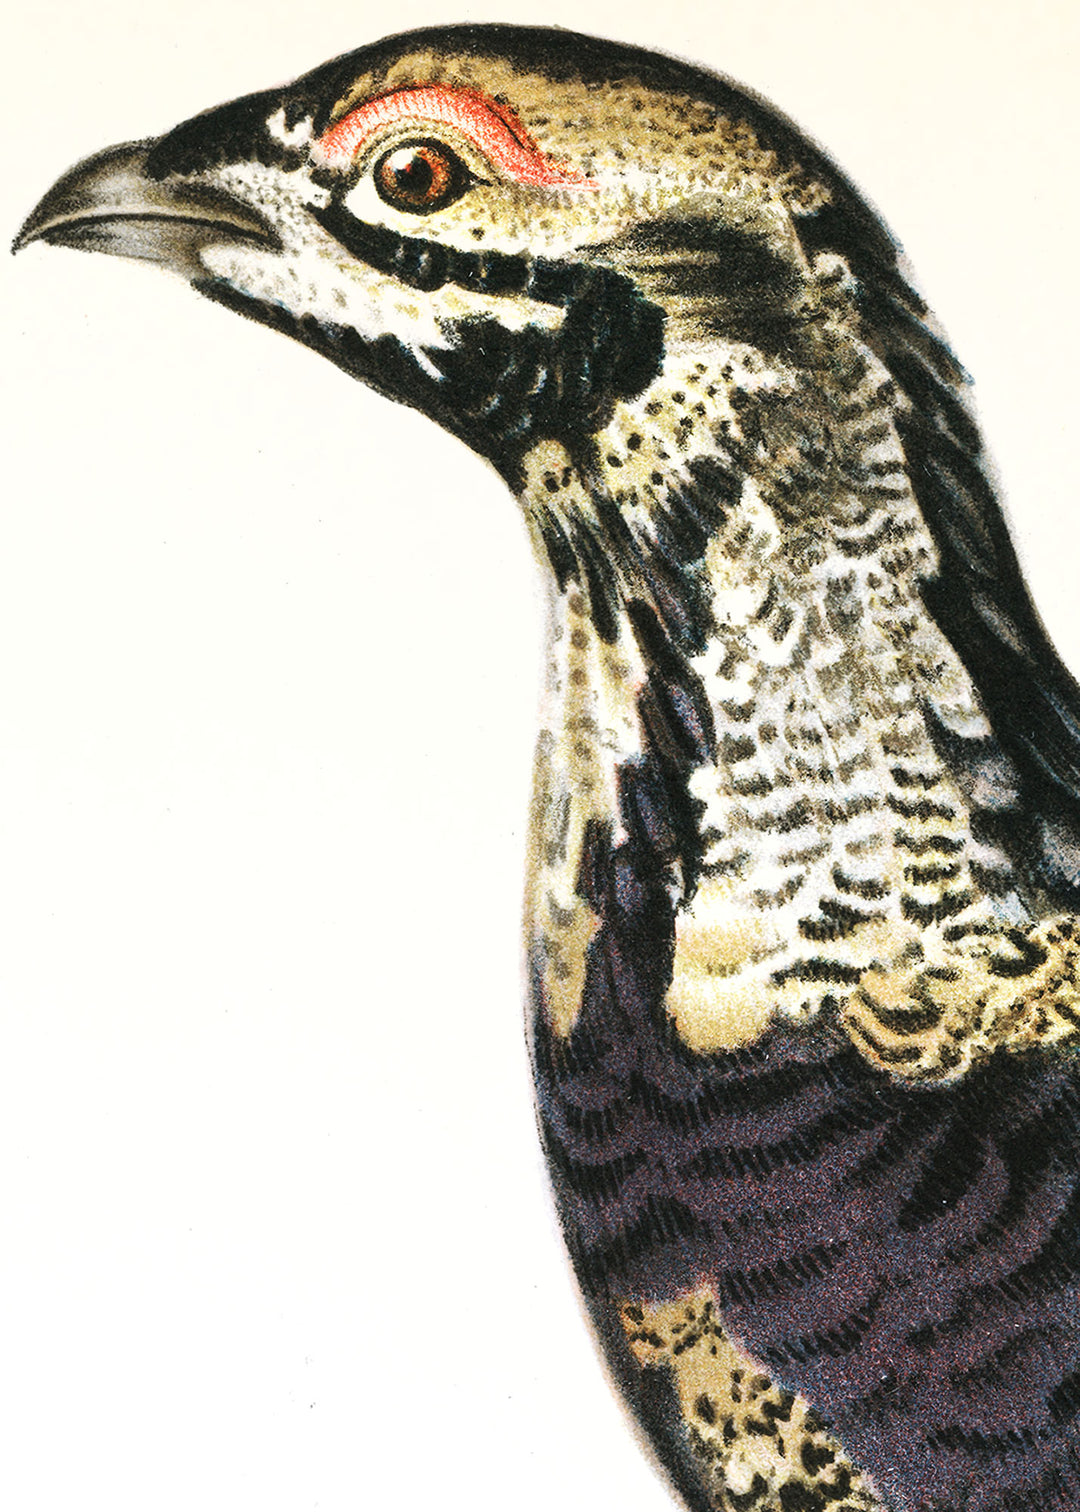 Fågeln Rackelhane, ung tupp på klassisk vintage poster/affisch